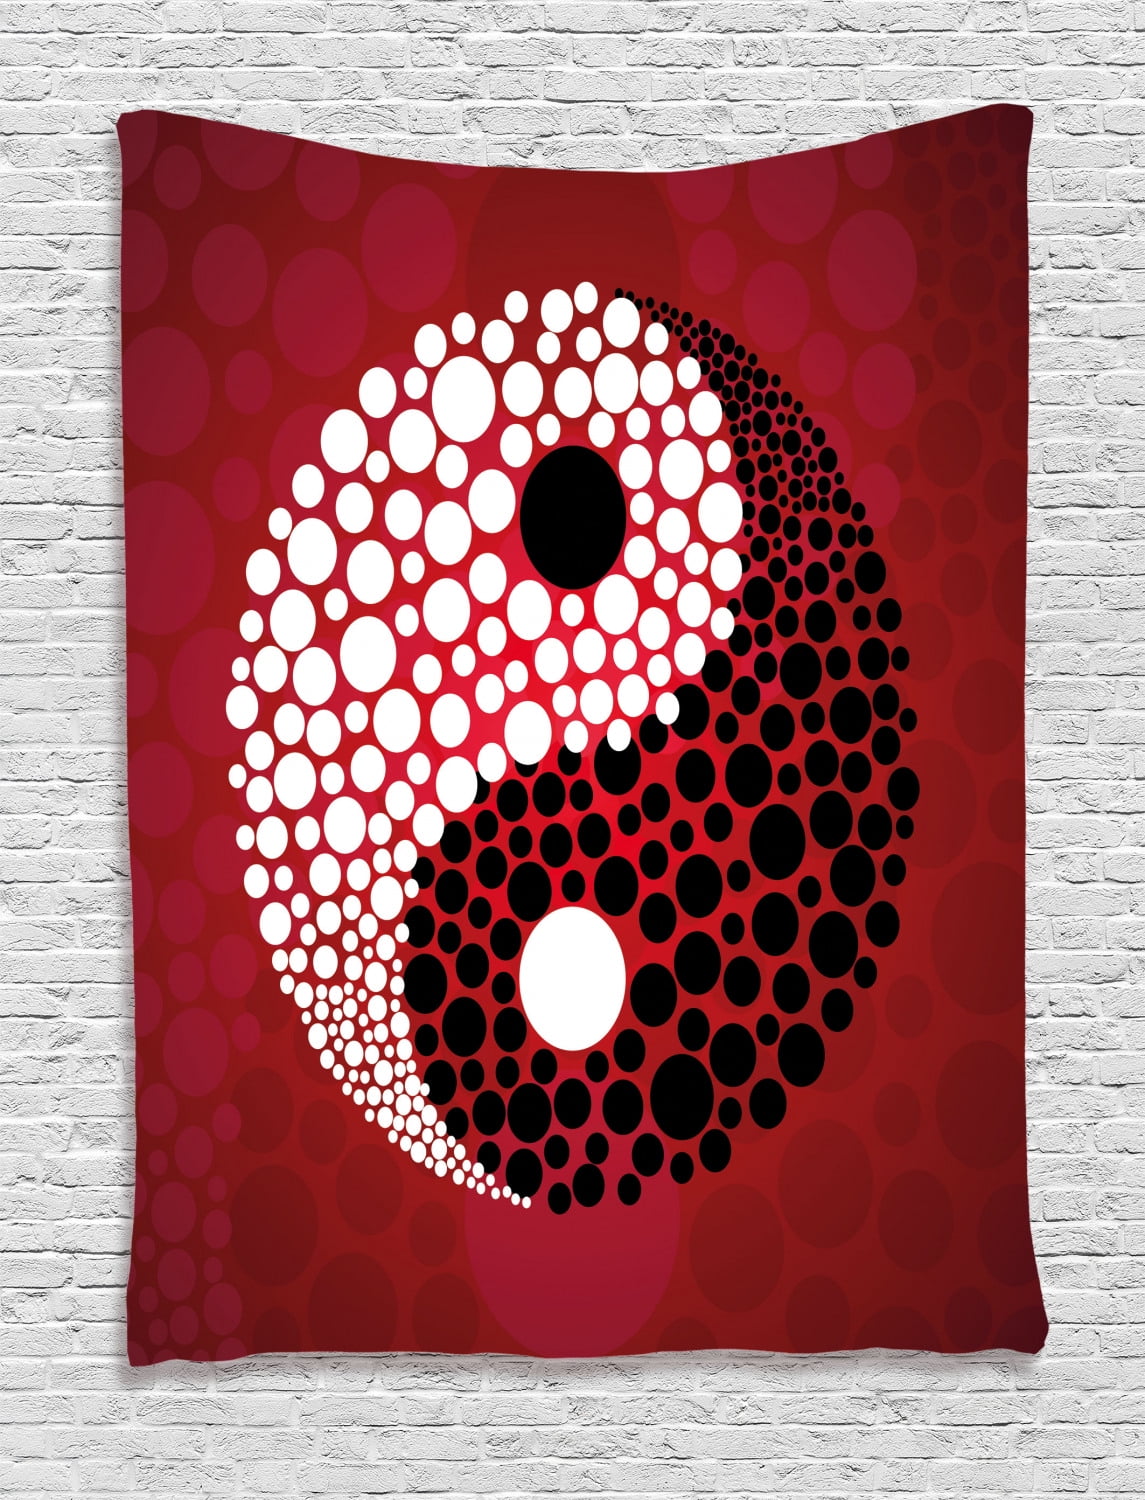 Ying Yang Tapestry, Abstract Graphic Design Yin Yang Circle Black and